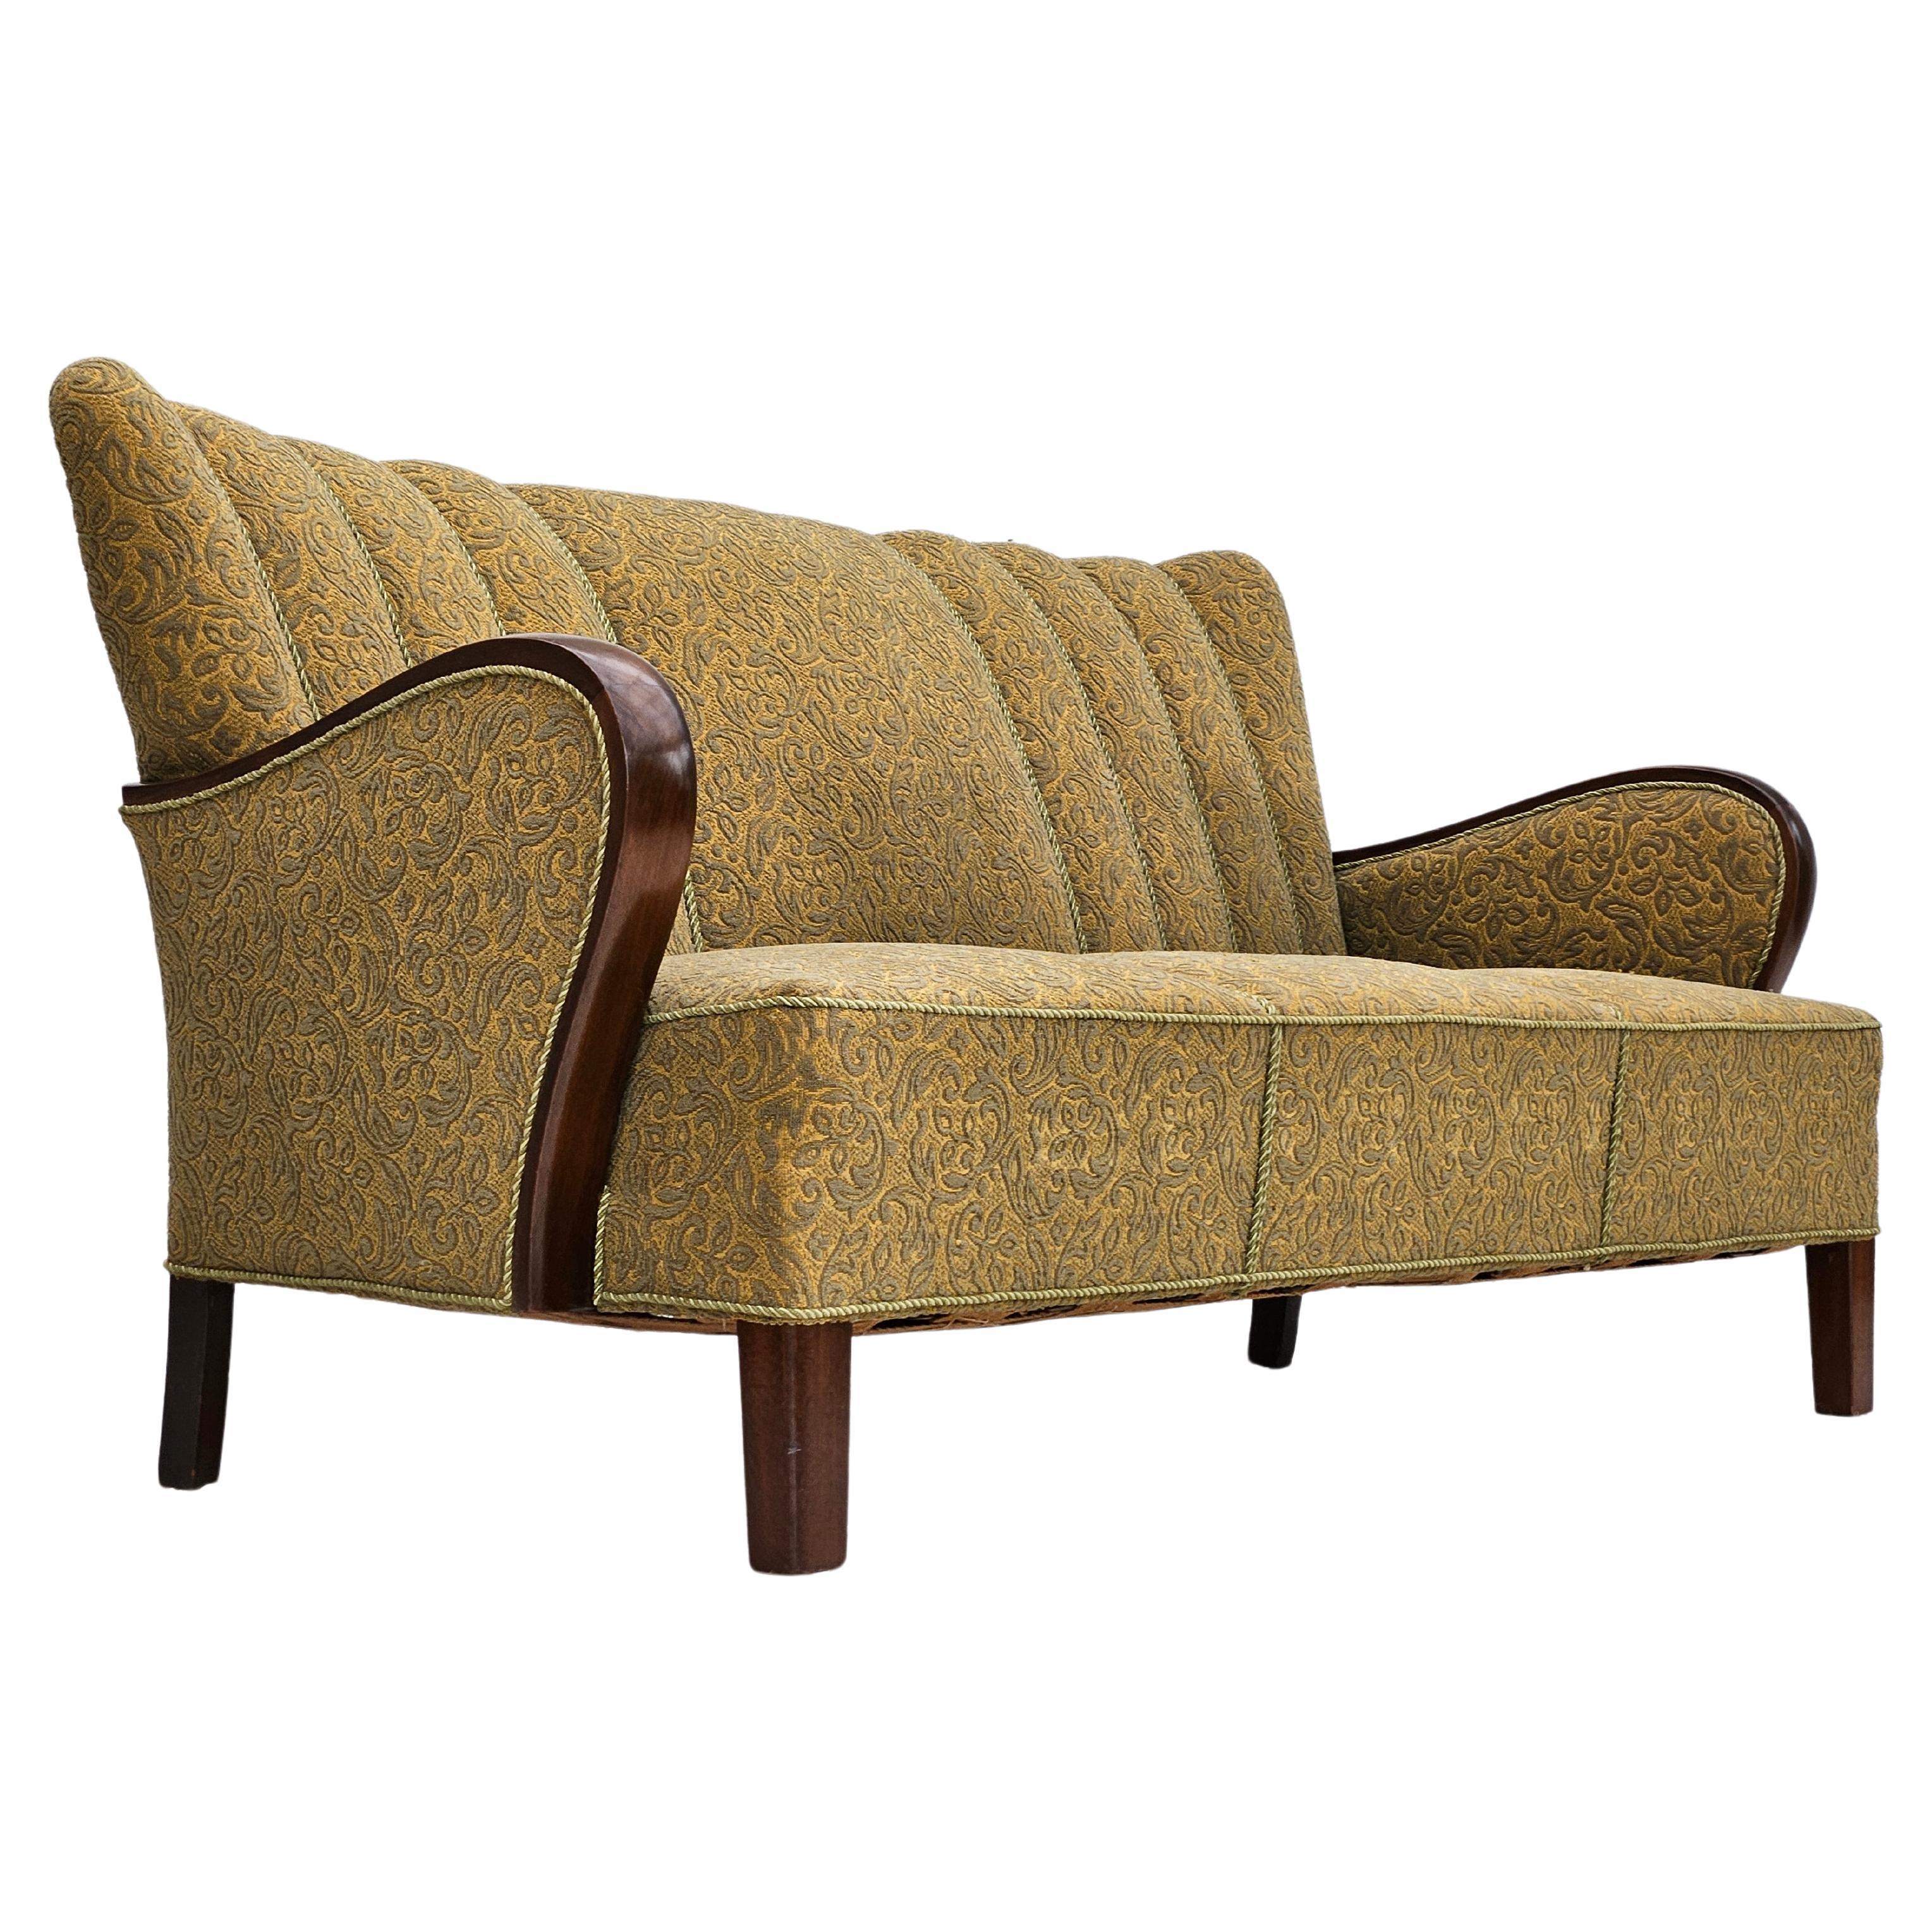 1950-60er Jahre, dänisches 3-Sitzer-Sofa, Originalzustand, Baumwolle/Wolle, Buchenholz.